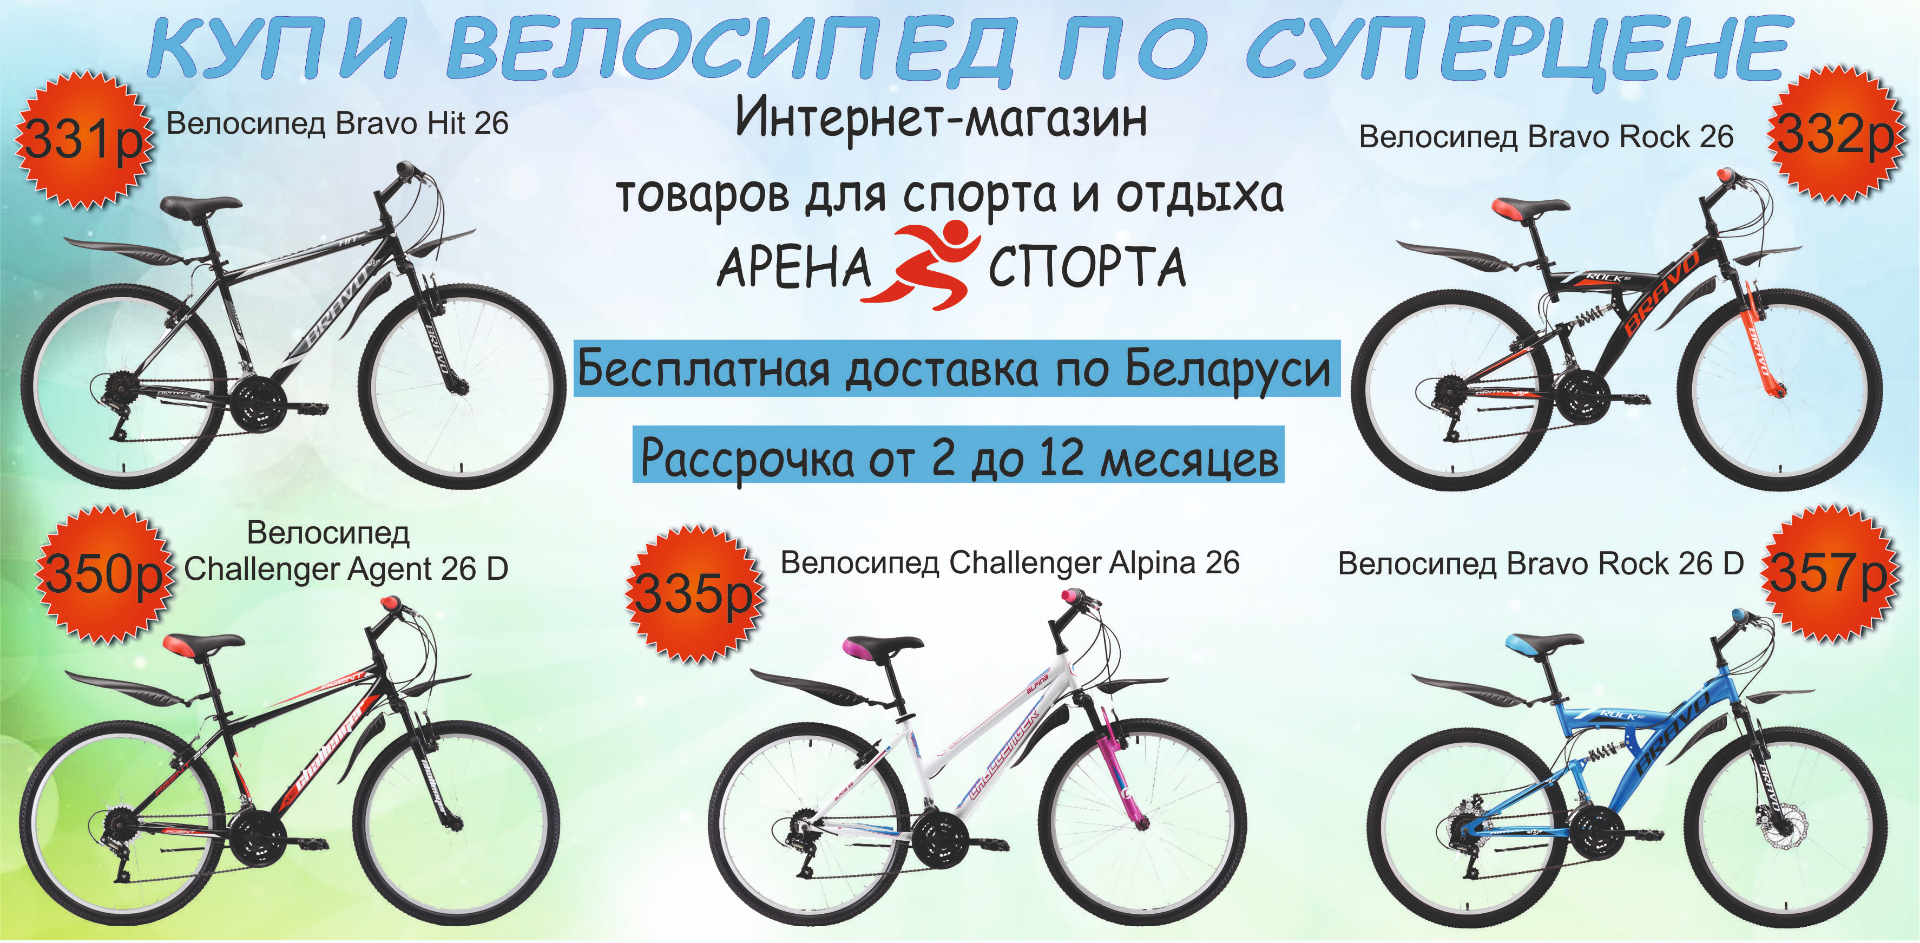 Купить велосипед в беларуси с доставкой. Велосипед в магазине да. Велосипед Bravo 20. Велосипед Браво рок. Велосипед Bravo разна светная диска.